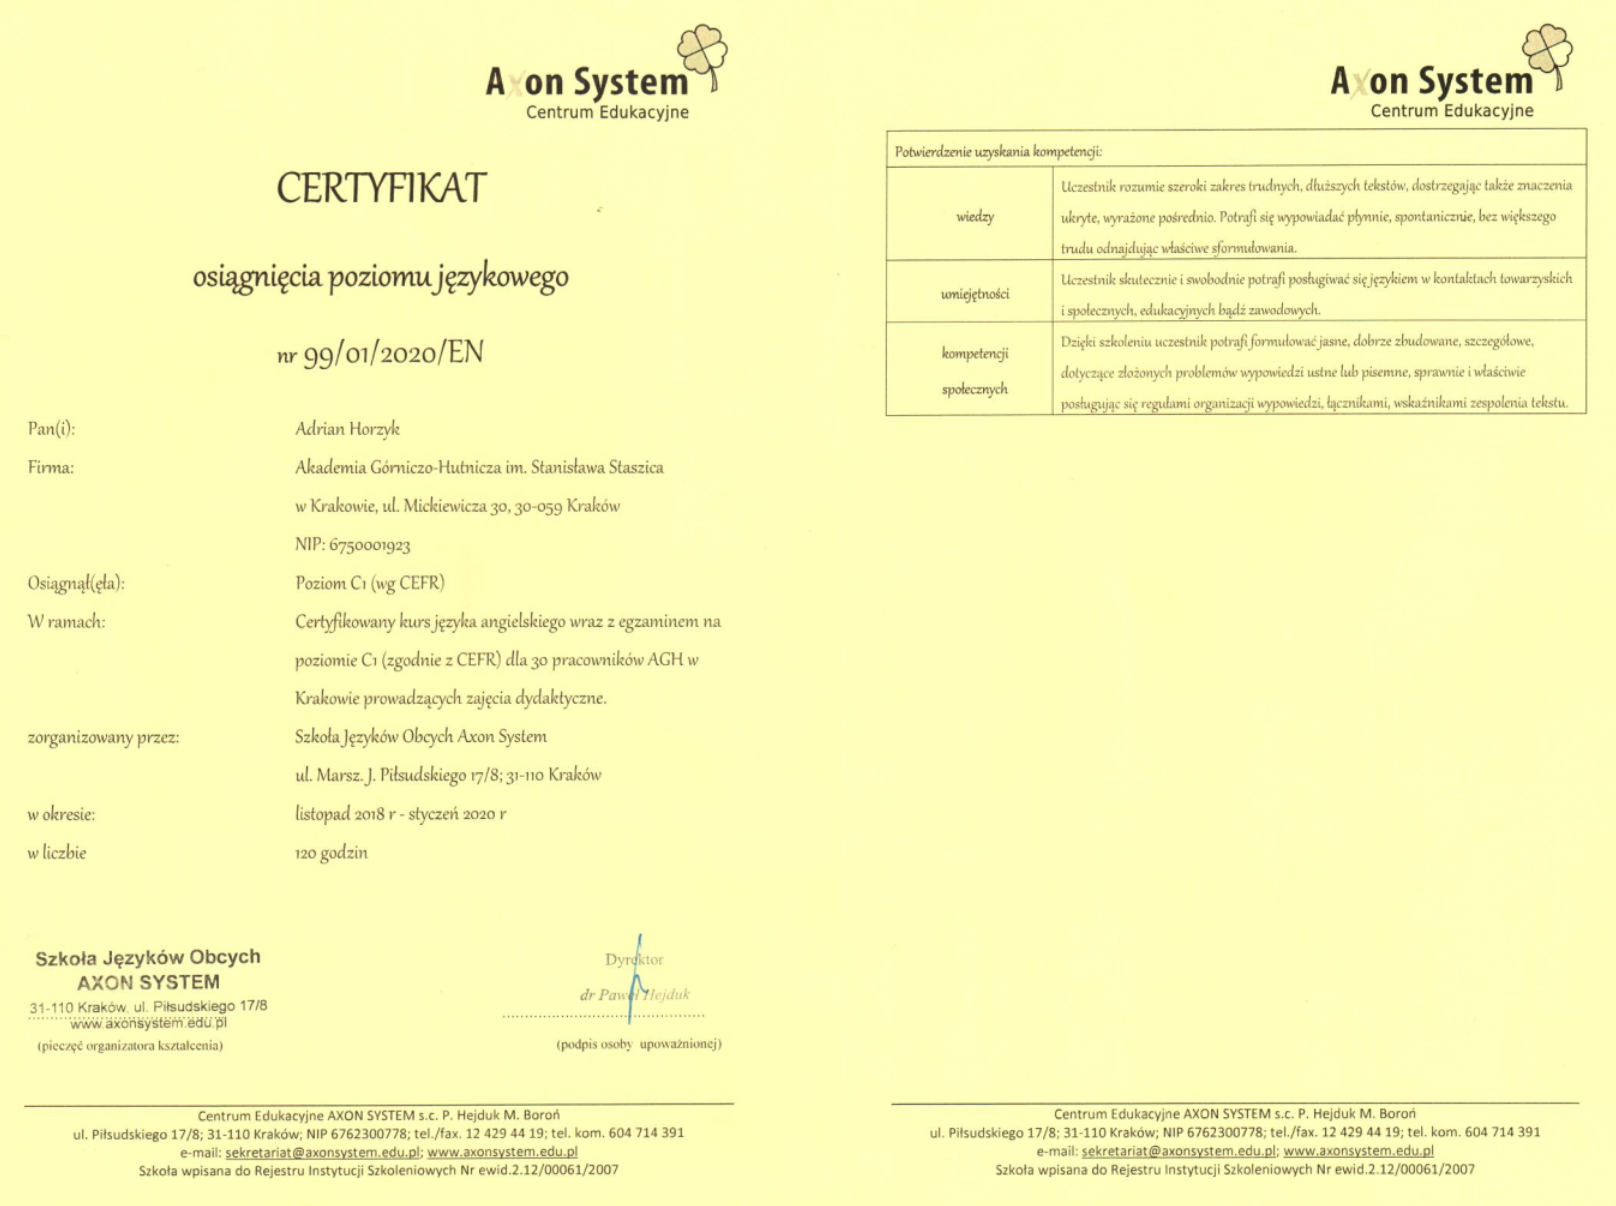 2020-01-adrianhorzyk-axon-angielski-poziomc1-certyfikat (800 kB)